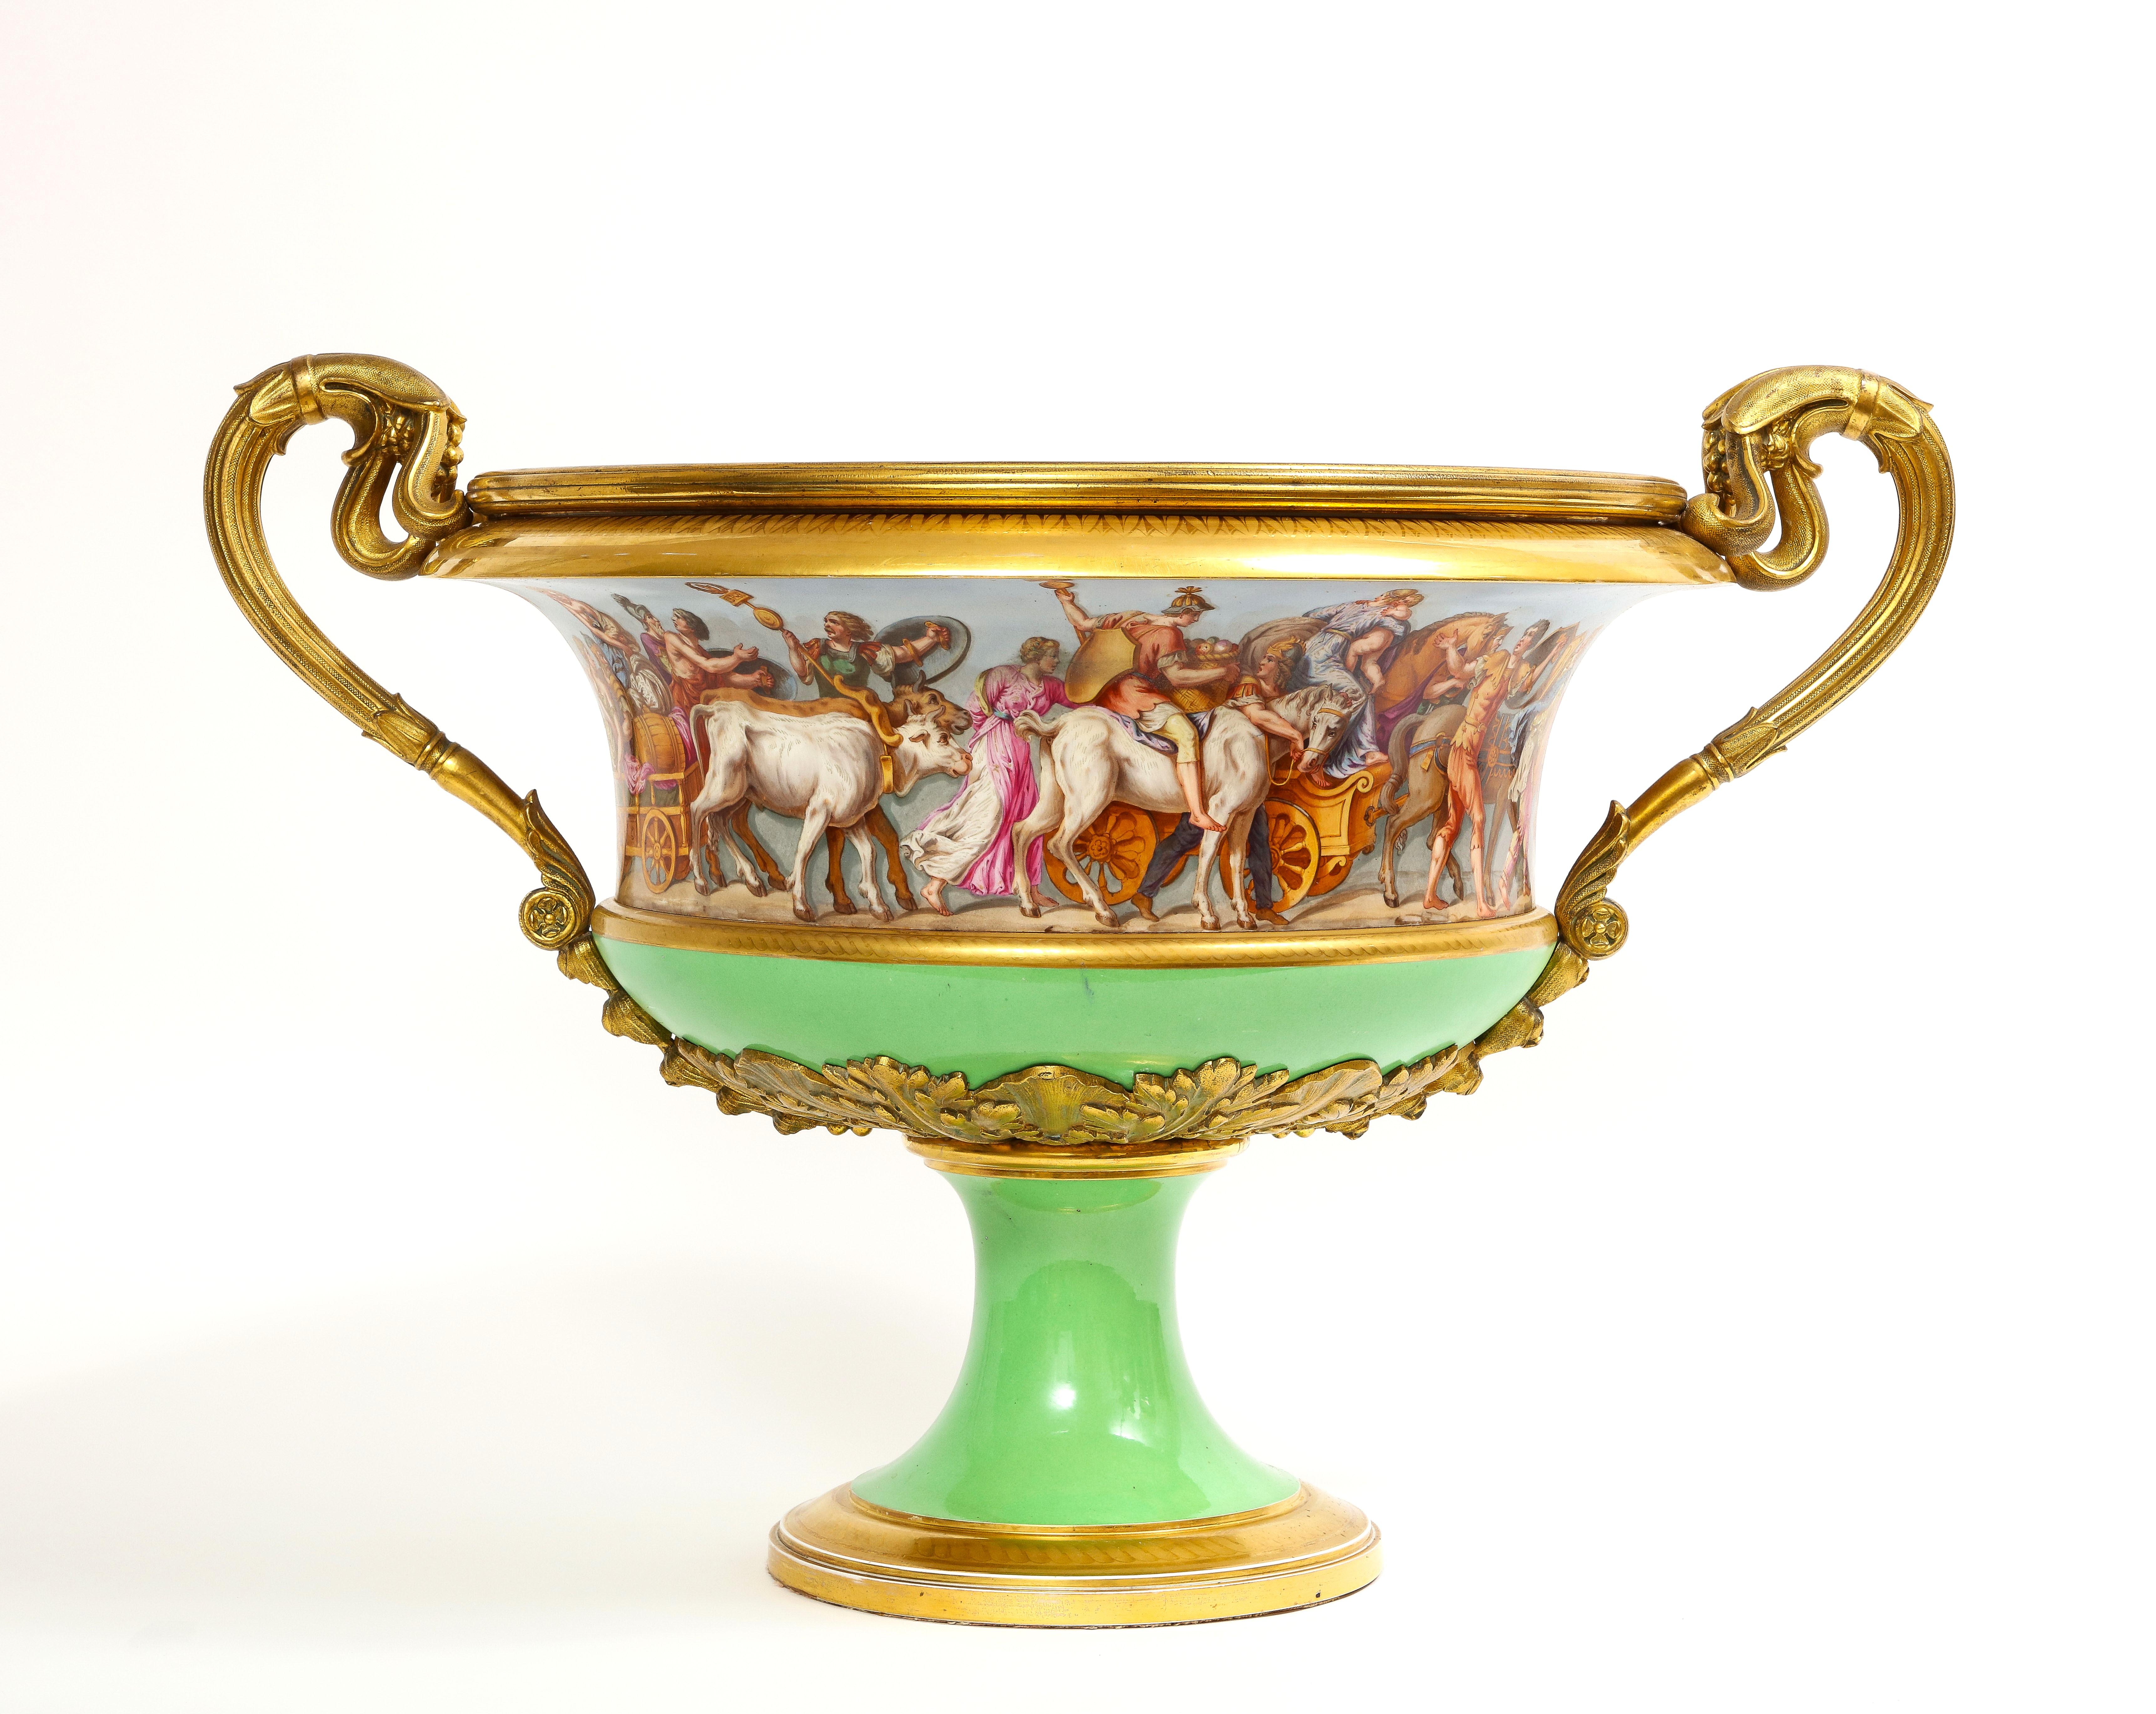 Important et monumental centre de table/vase de forme campana à deux anses en porcelaine de Sèvres du XIXe siècle, monté en bronze doré. Il s'agit d'un véritable chef-d'œuvre de Sèvres. Les vases Sèvres de cette taille avec des poignées en bronze